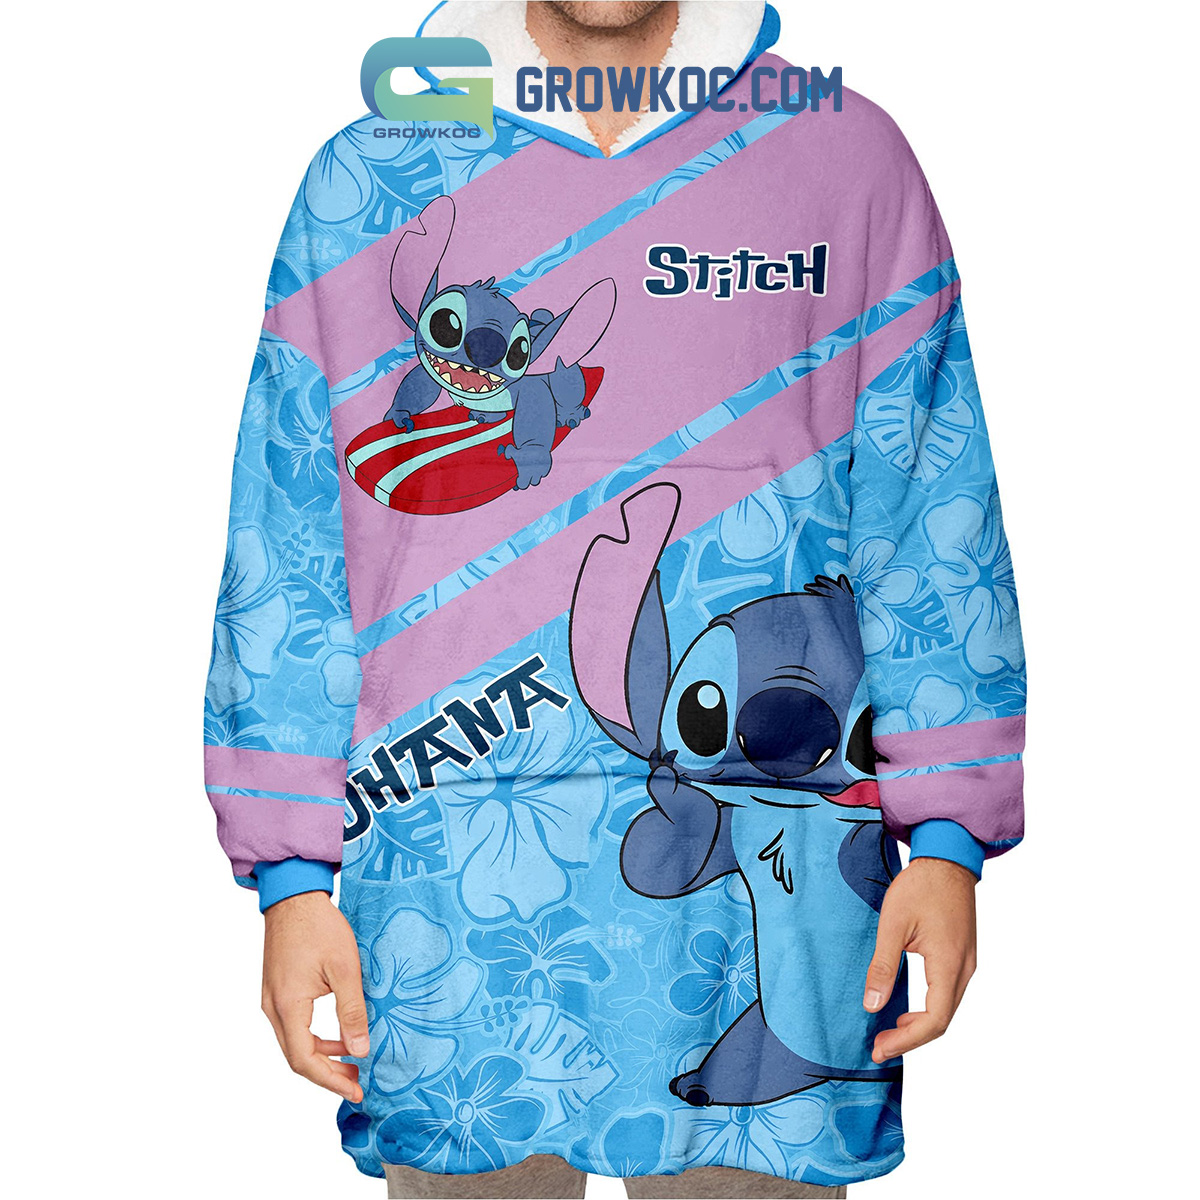 Bonnet Stitch - Disney - Cotton Division - Taille Unique - AmuKKoto